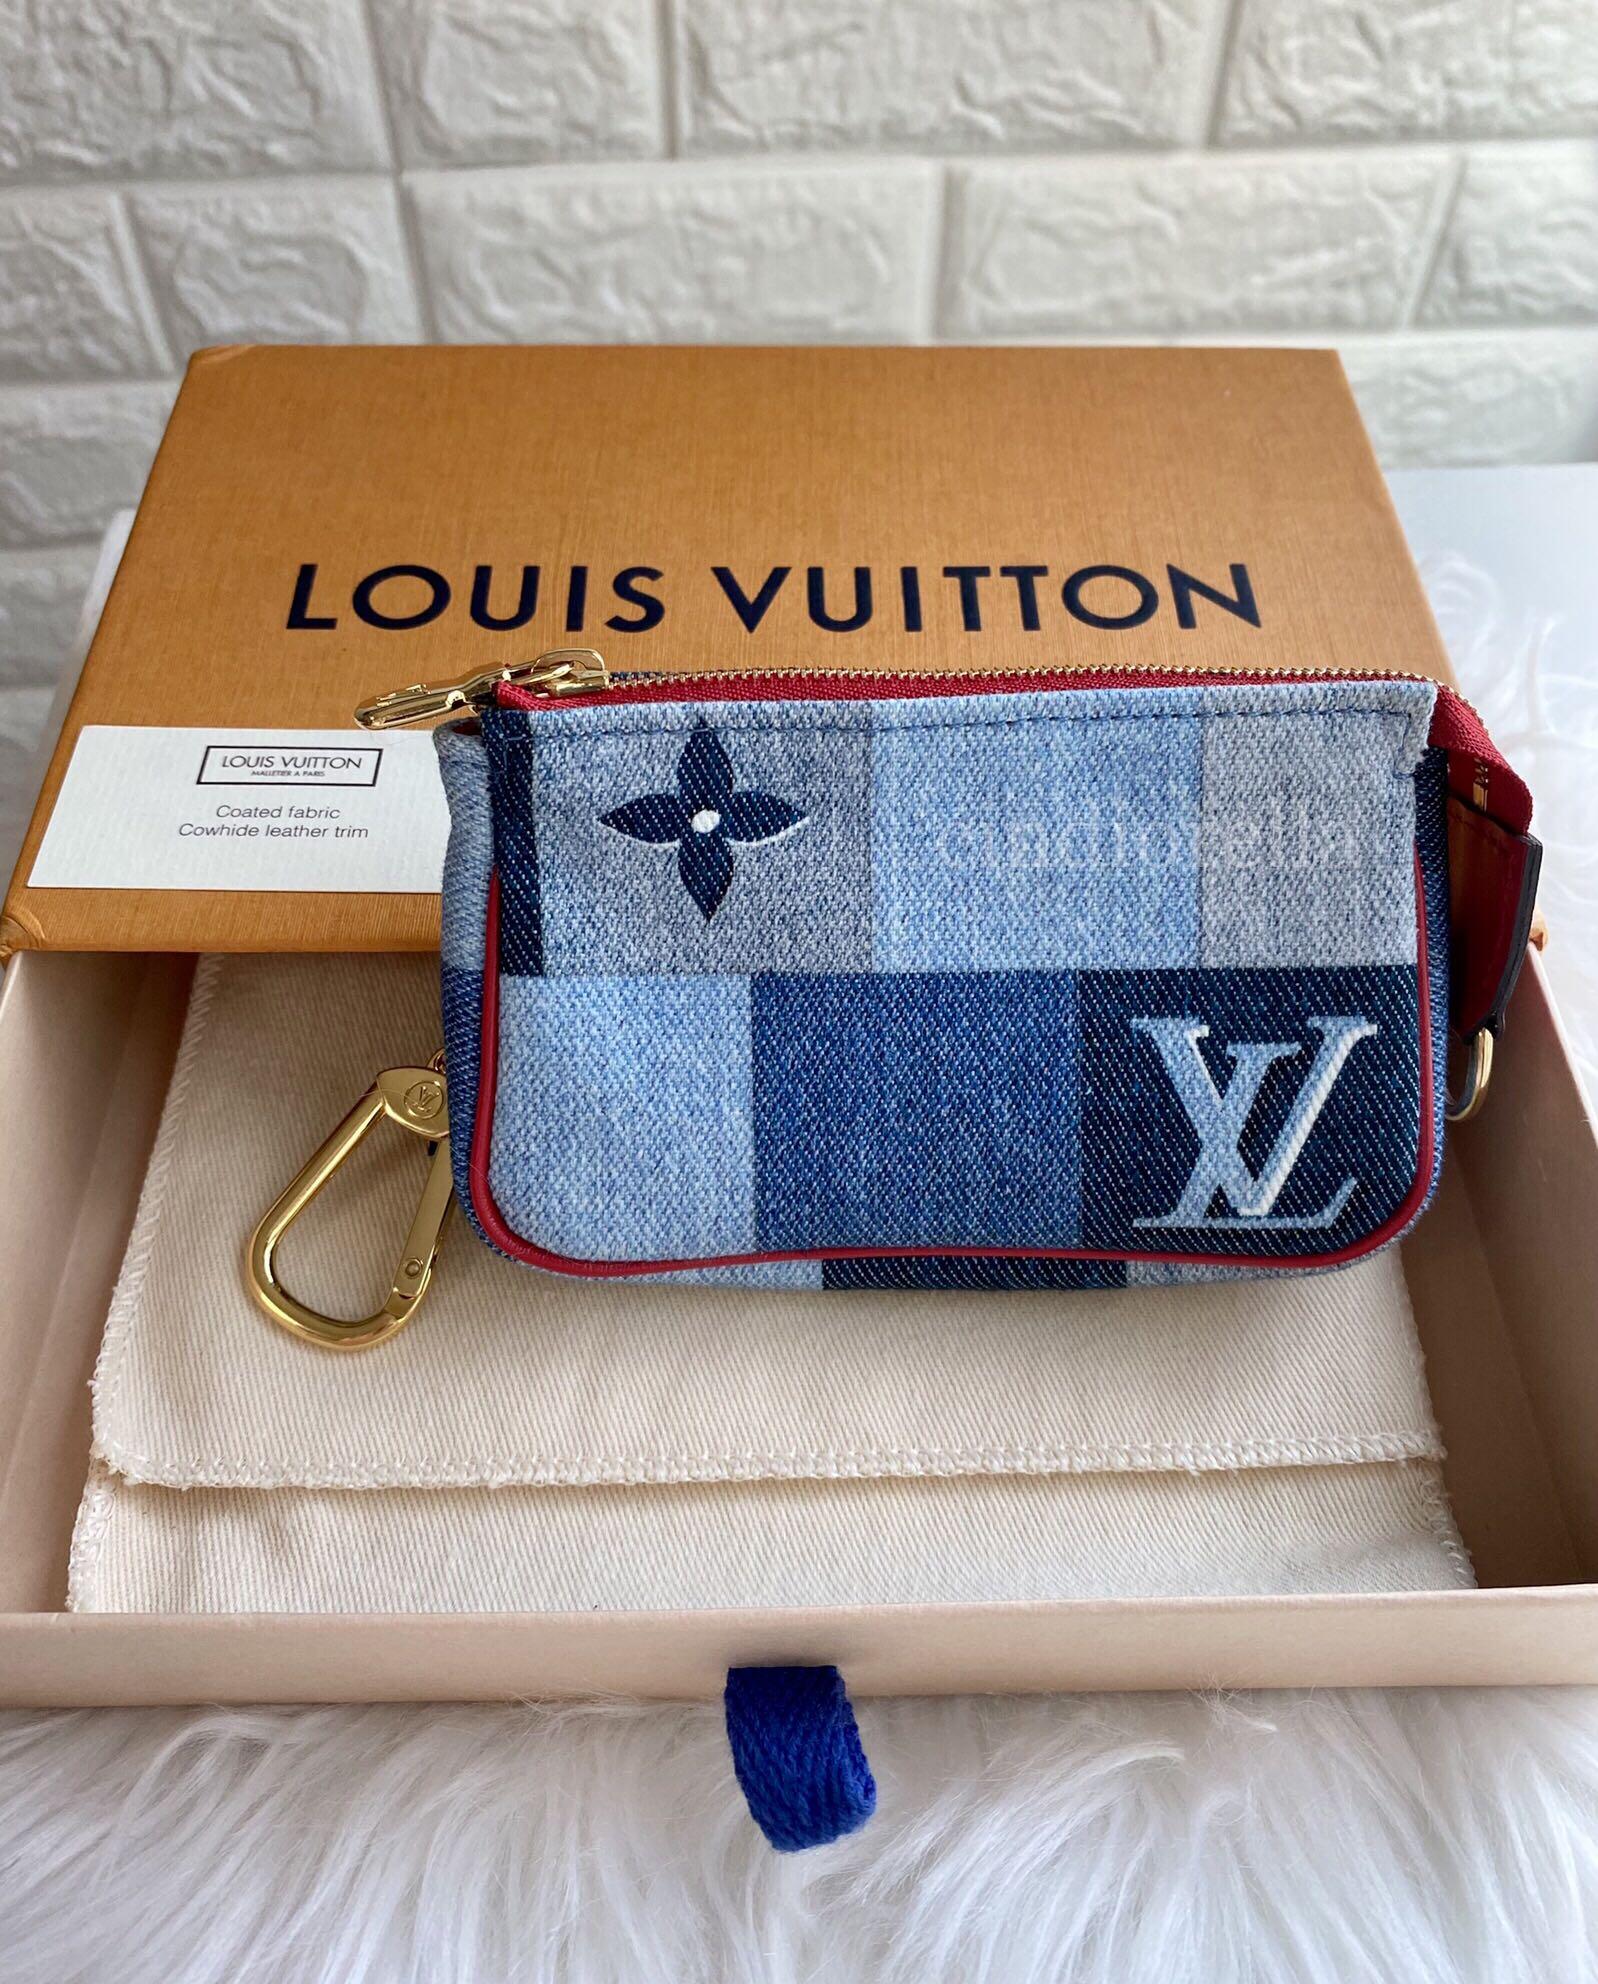 LOUIS VUITTON Louis Vuitton Micro Pochette Accessoire Coin Case Purse Key  Ring Monogram Denim M68760 Red Blue Gold Hardware